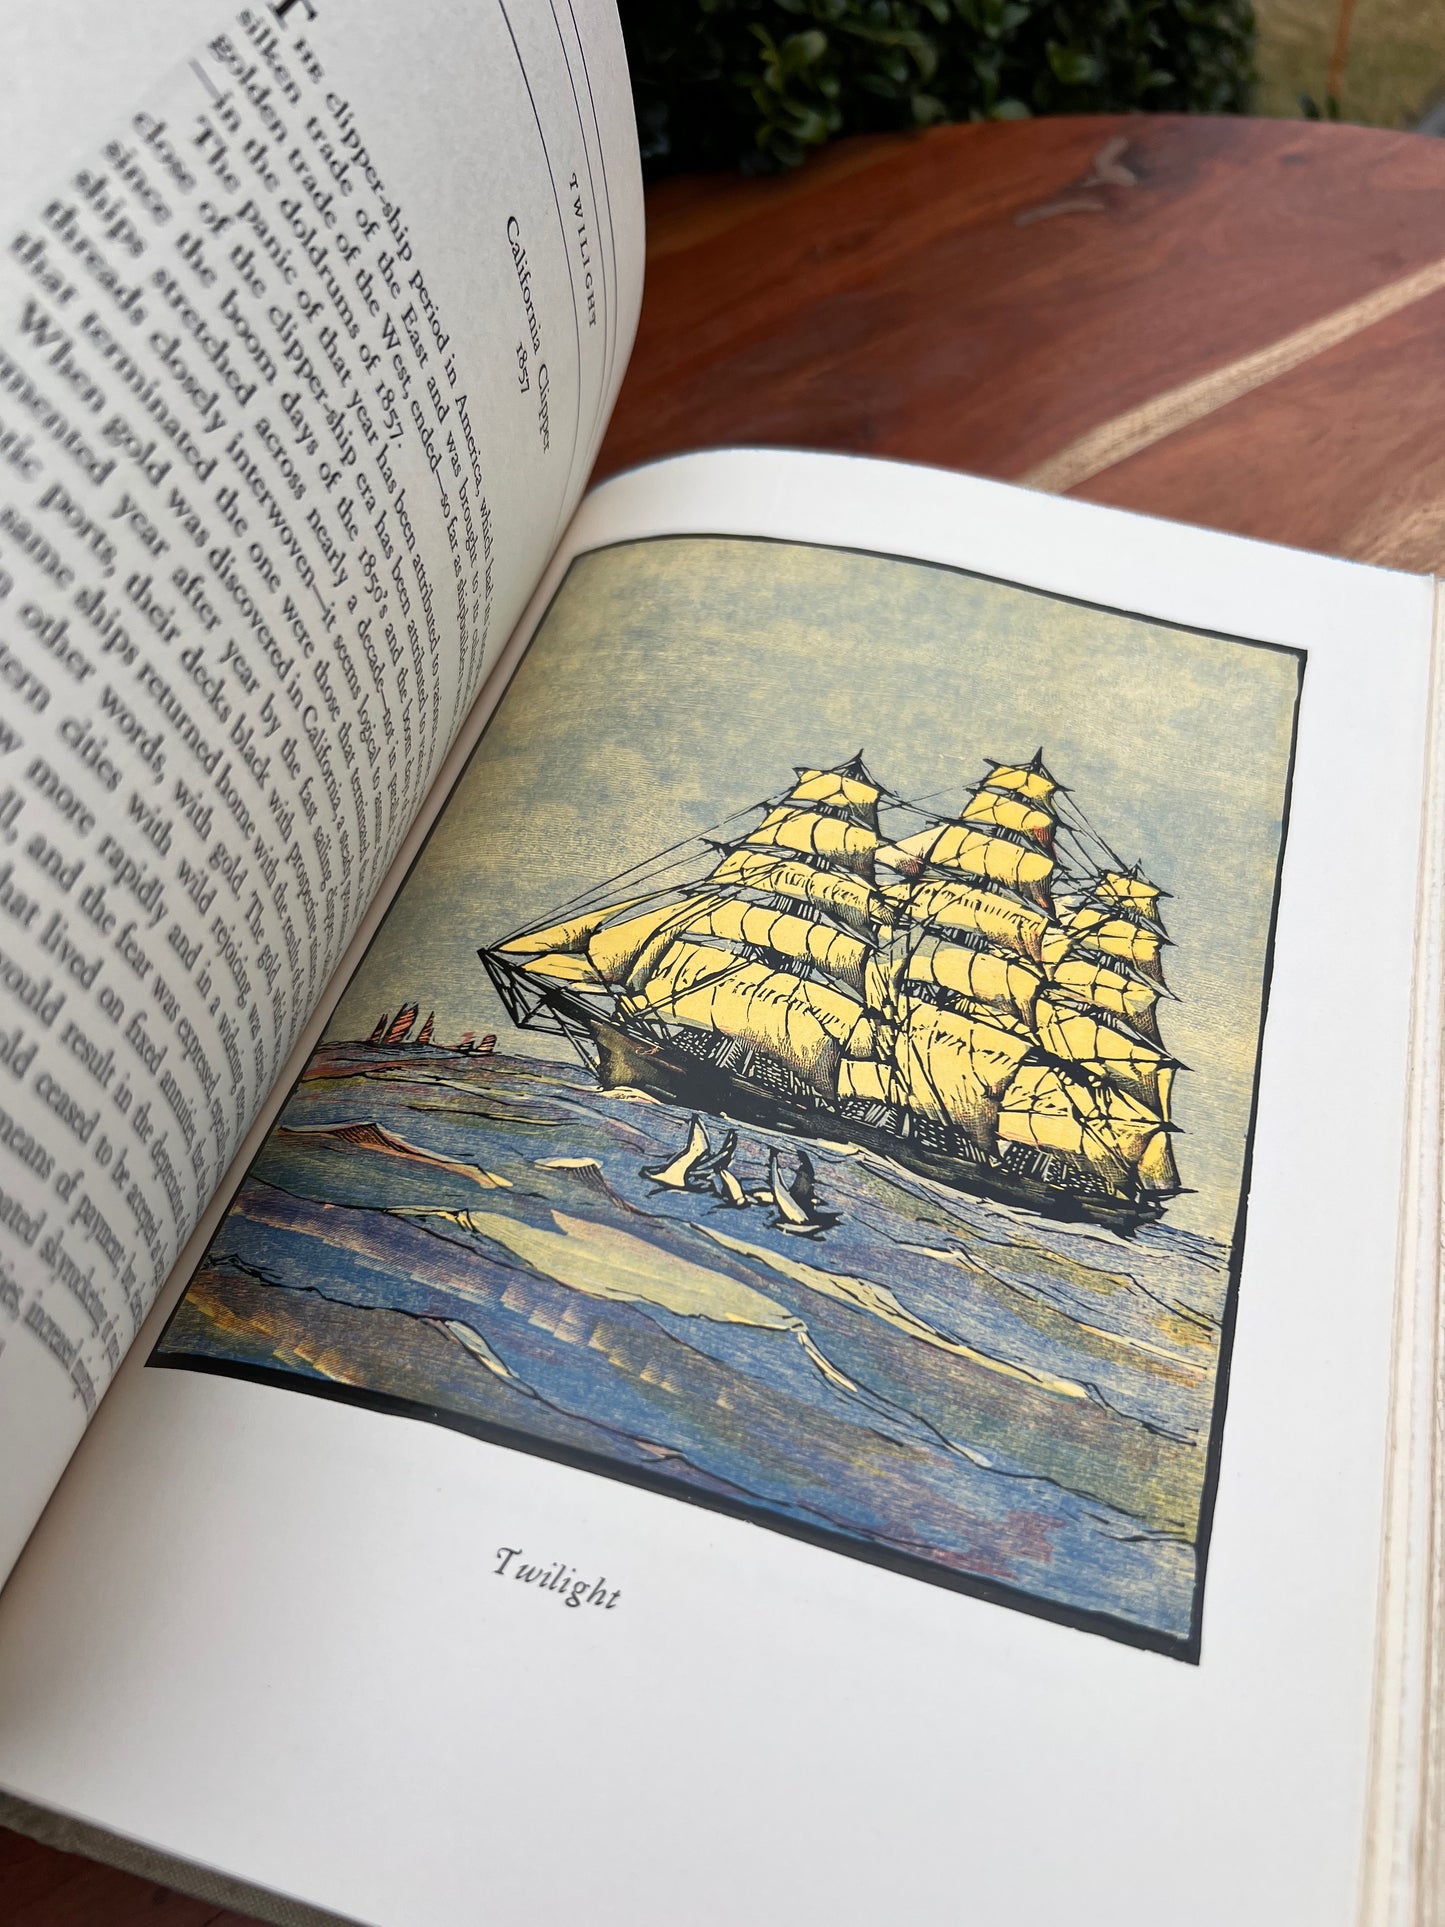 Clipper Ships of America and Great Britain 1833-1869 Jacques La Grange Helen La Grange